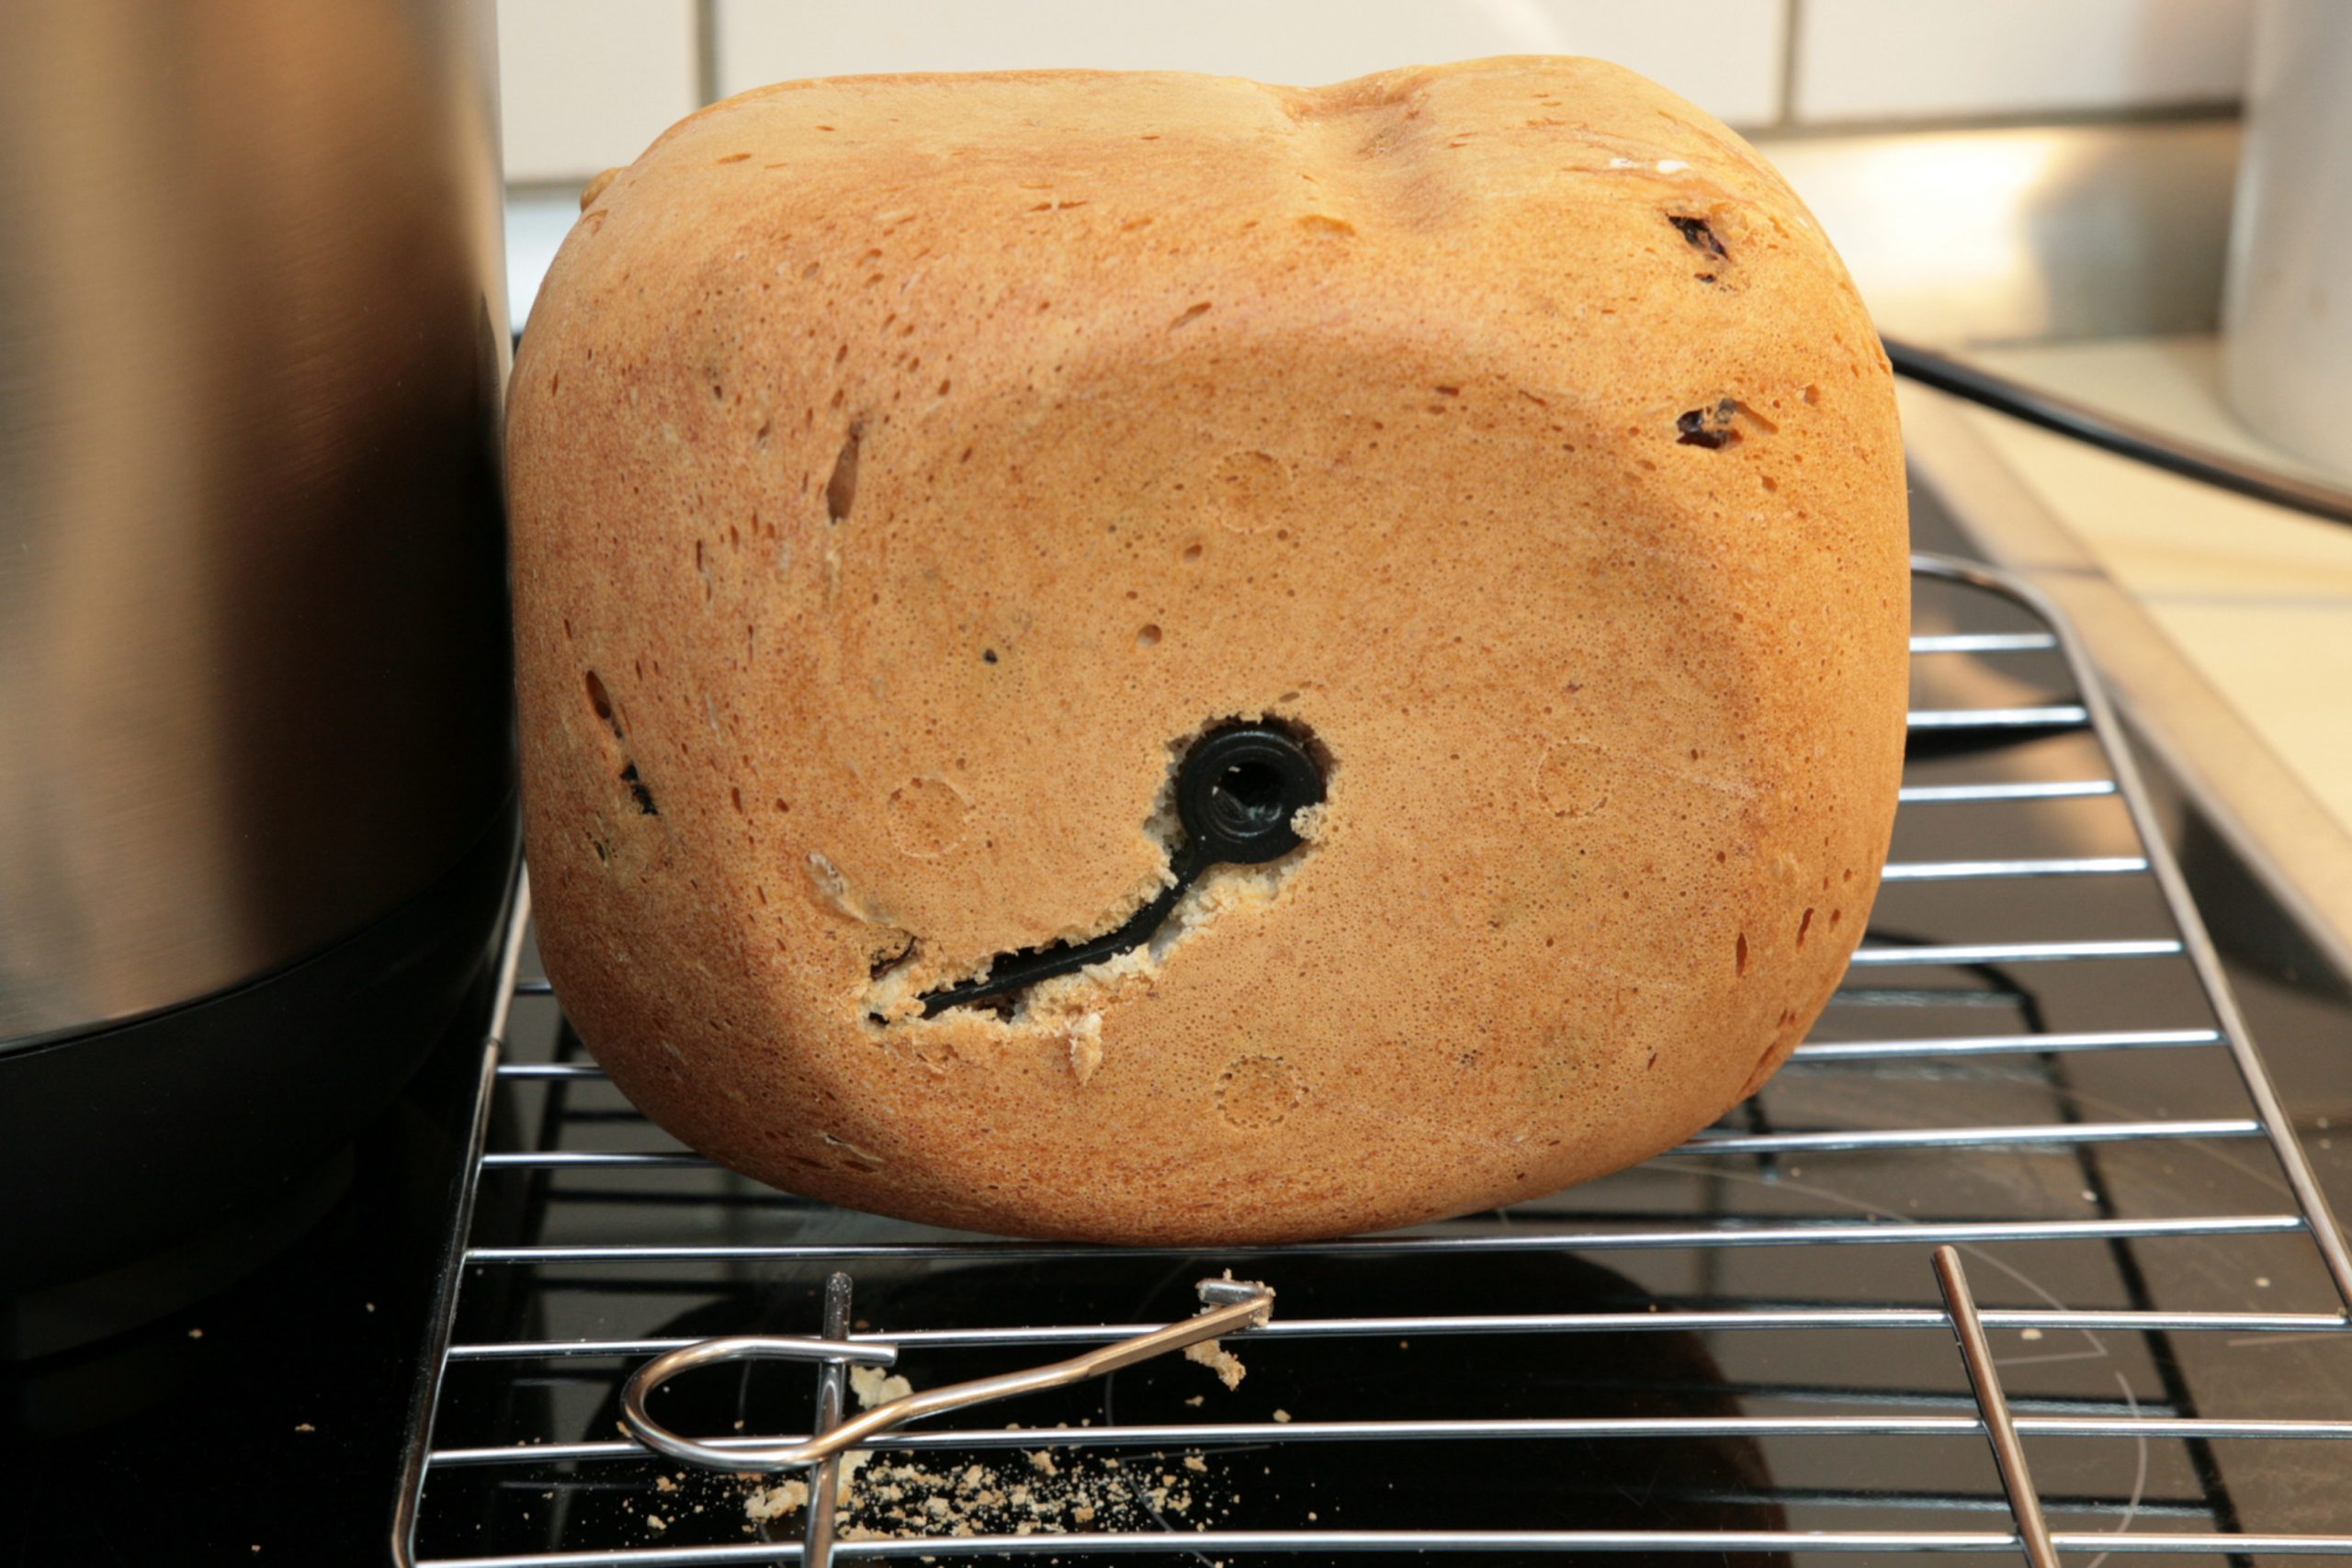 Helles ovales Brot von vorne mit Loch und Riss auf Rost, davor ein Metalhaken